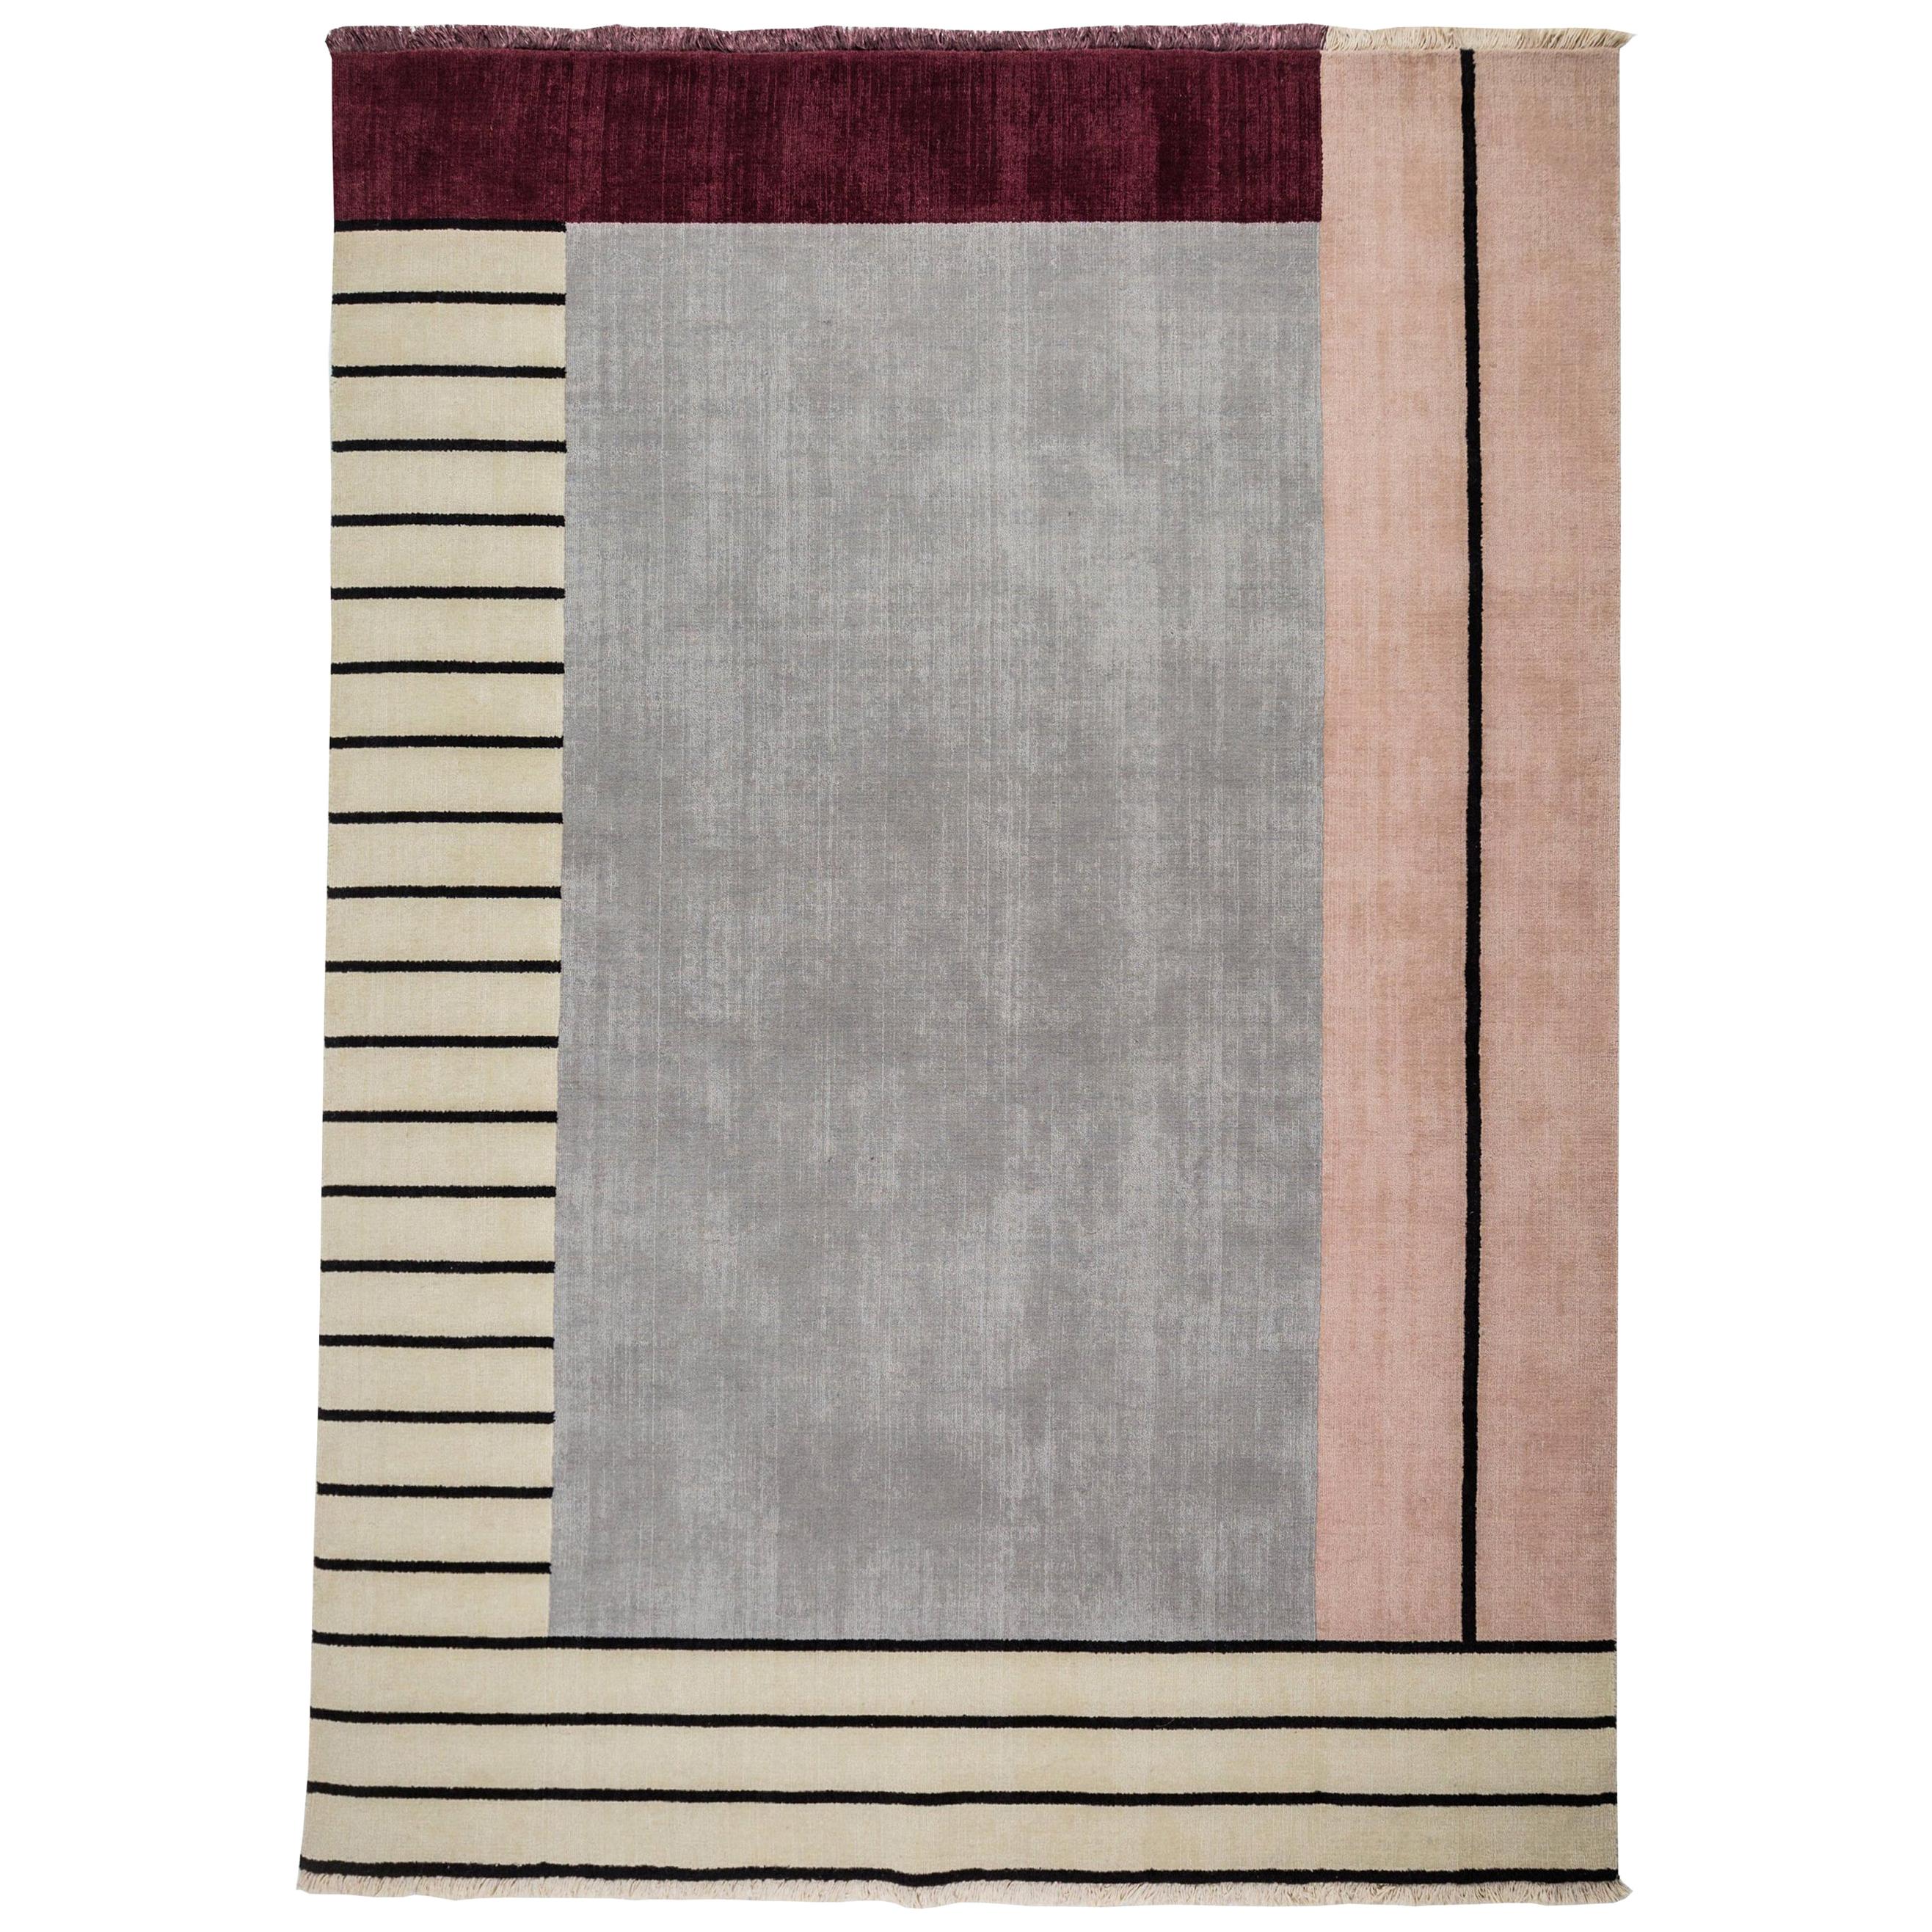  Teppich Laufsteg - Rosa Wolle Modern Geometrischer Grau Maroon Beige Streifen Kastenteppich